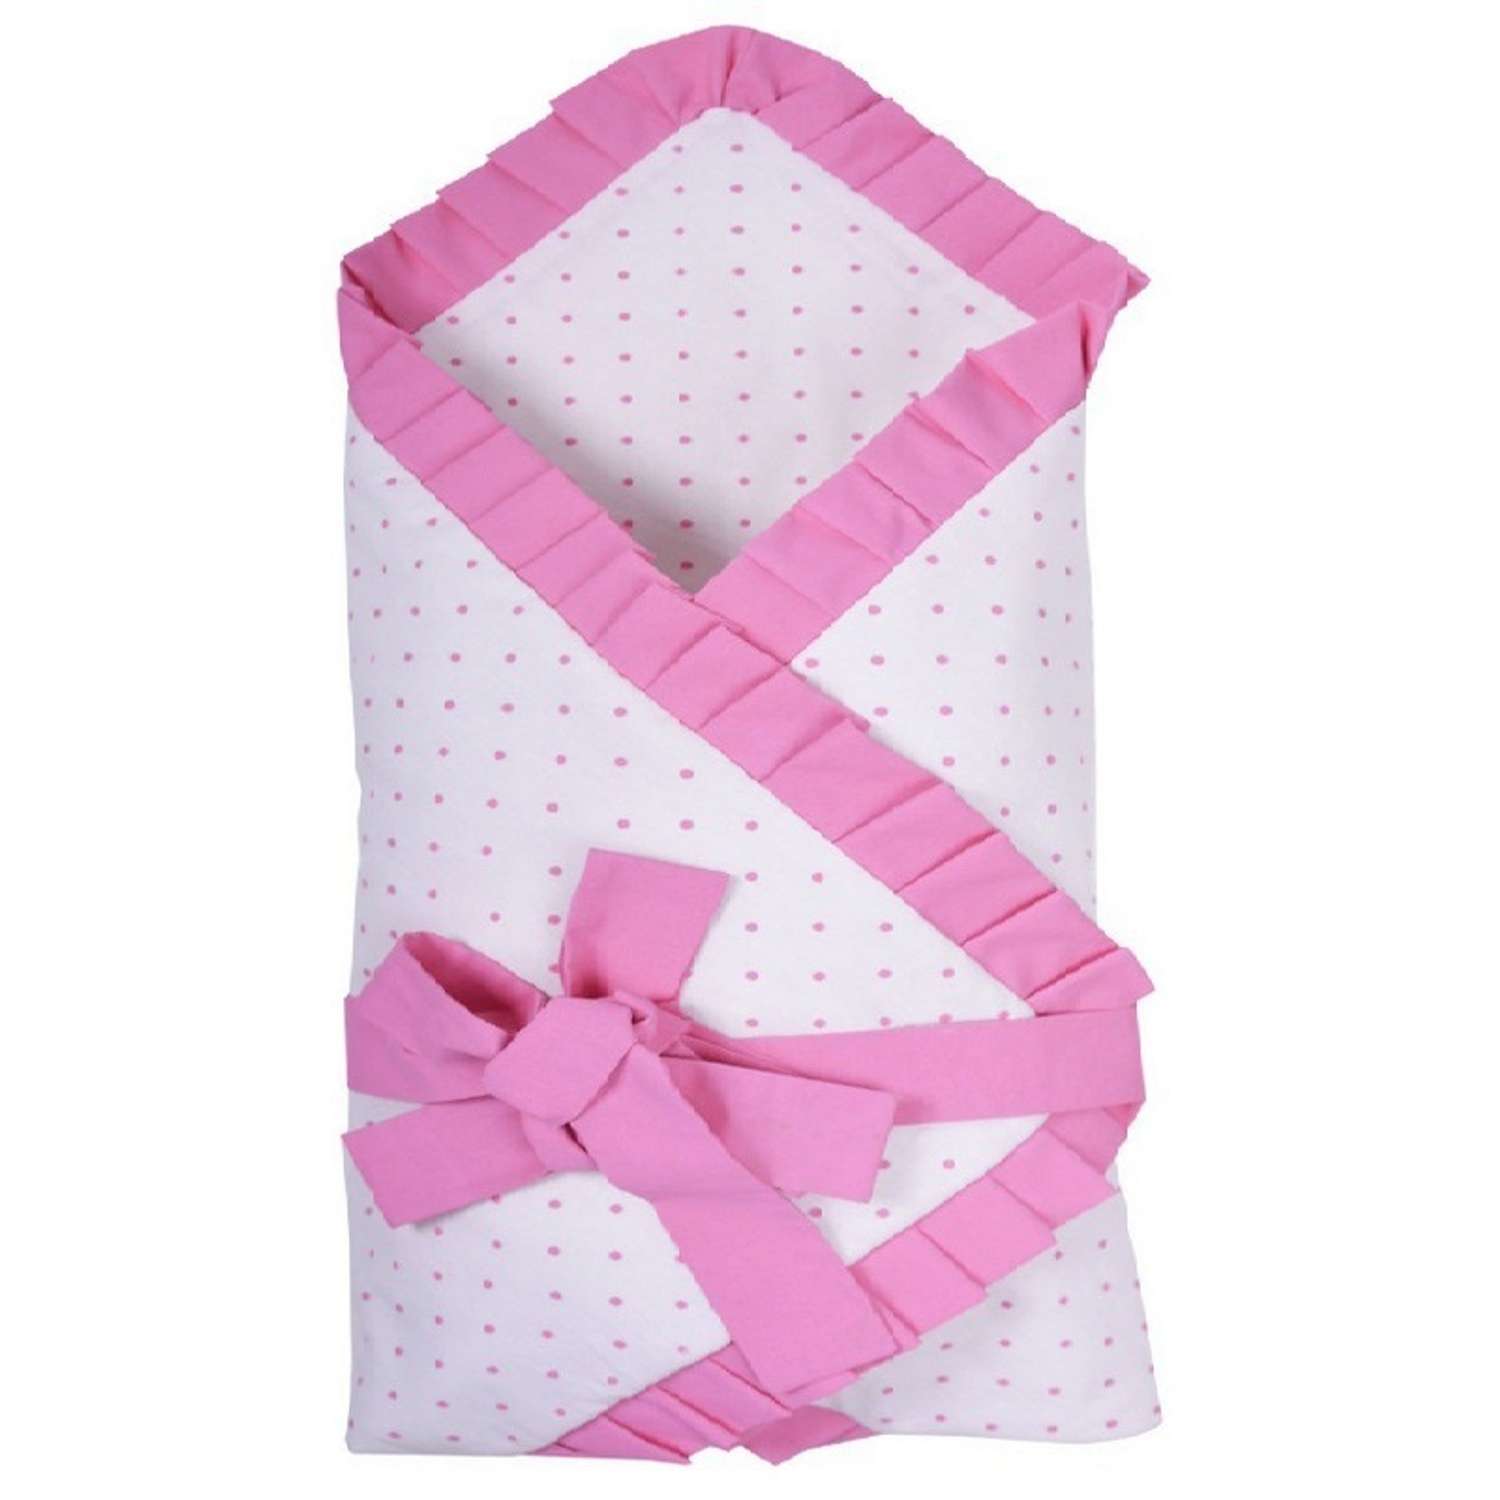 Одеяло Эдельвейс на липучке Розовое - фото 1